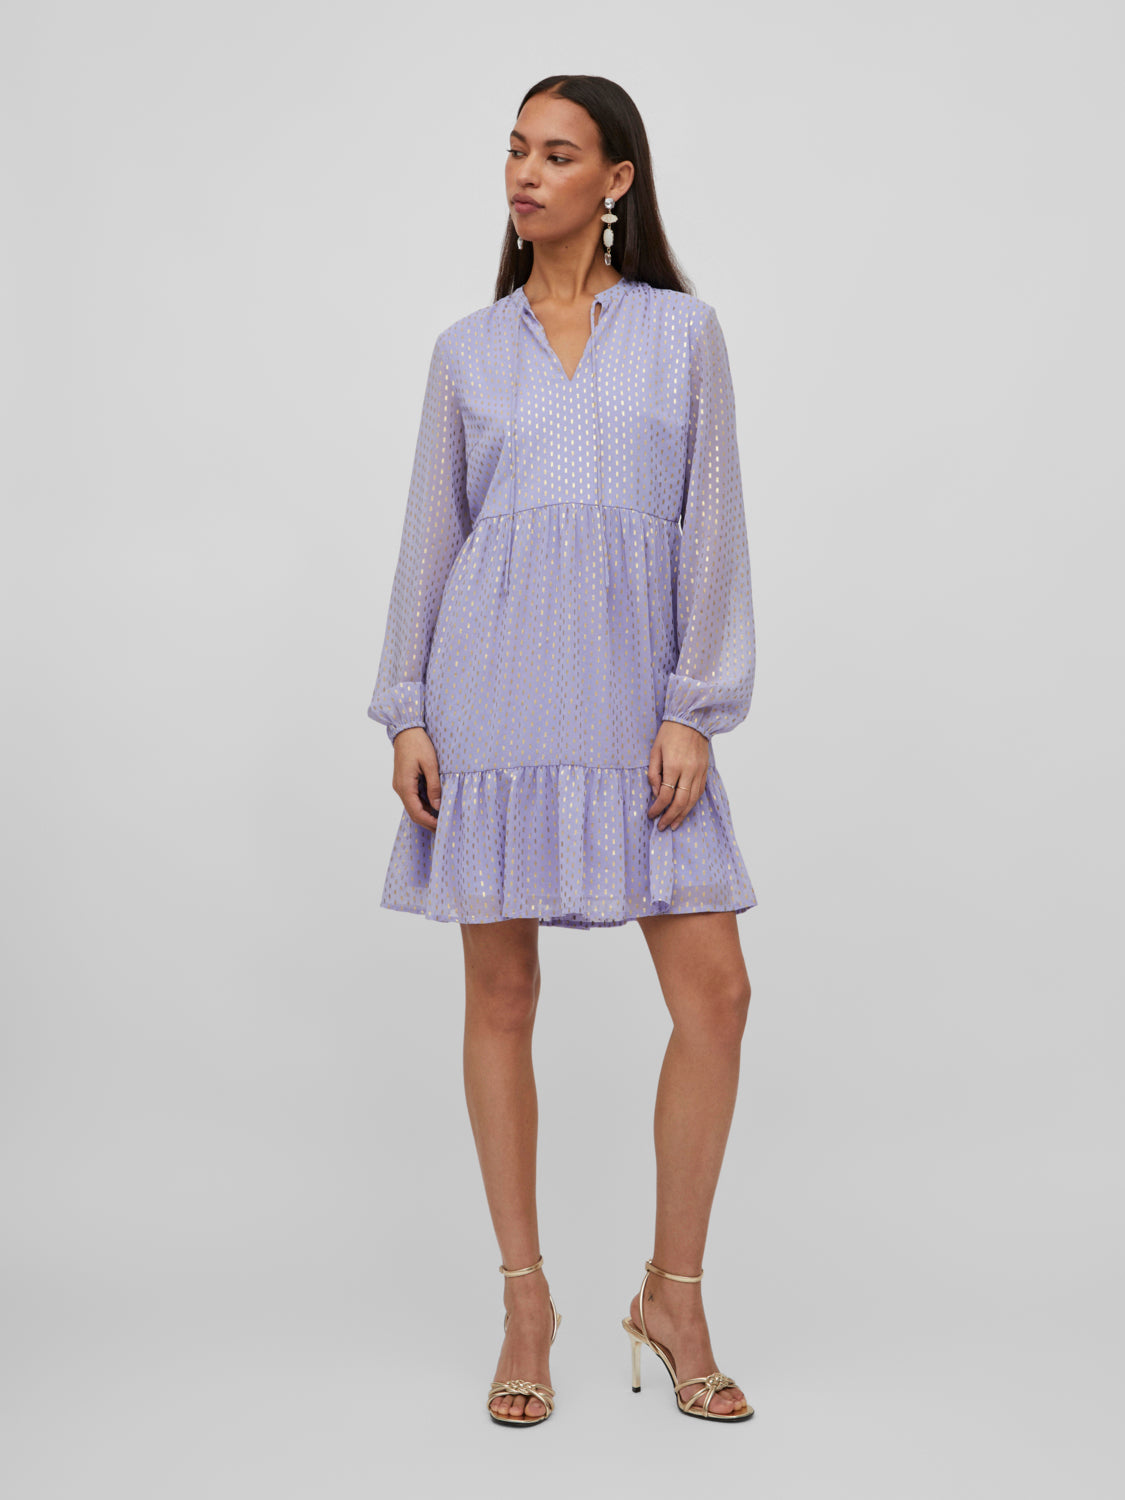 VILIDA Dress - Sweet Lavender